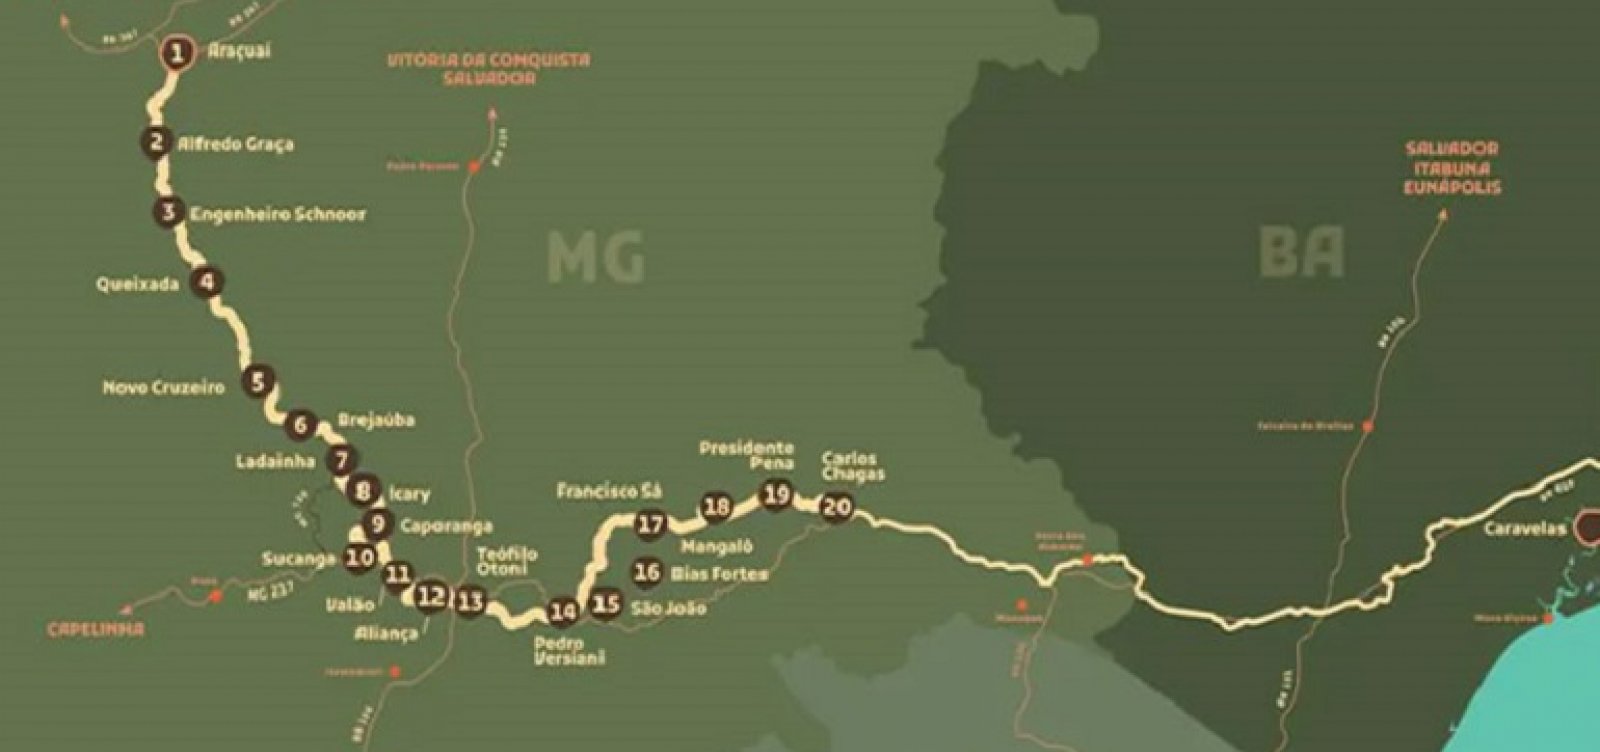 Após quase 60 anos, ferrovia Bahia-Minas é reconstruída com investimento de R$ 12 bilhões